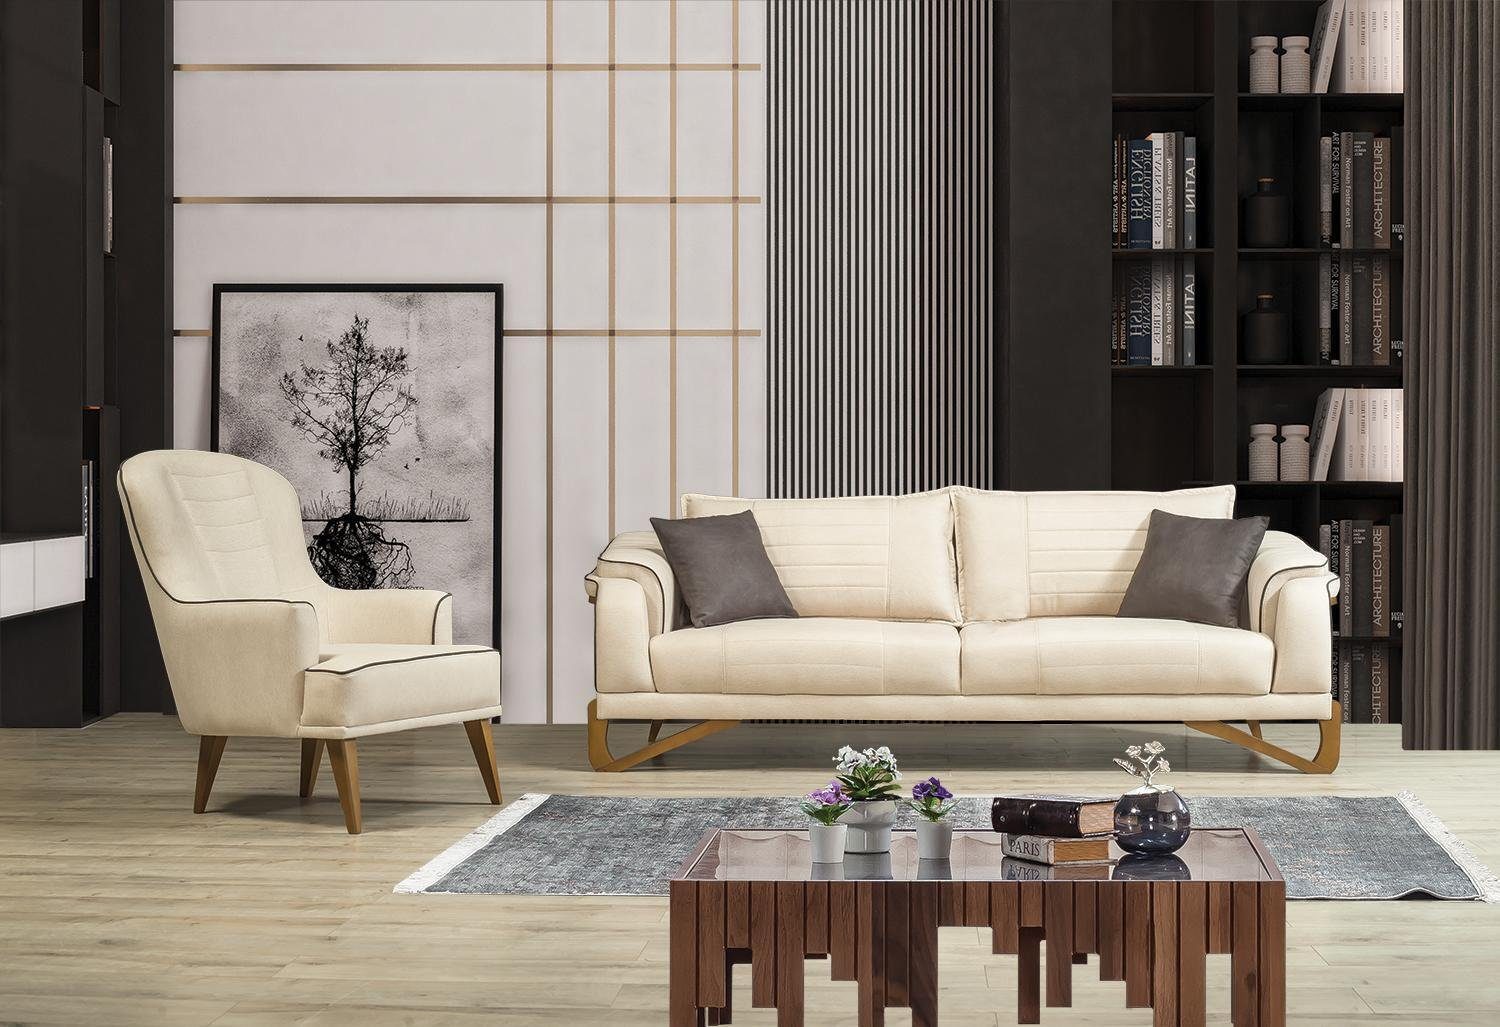 JVmoebel Sofa, Sofagarnitur Set Beige mit Holzgestell 3+1 Sitzer Couchen Garnituren | Alle Sofas